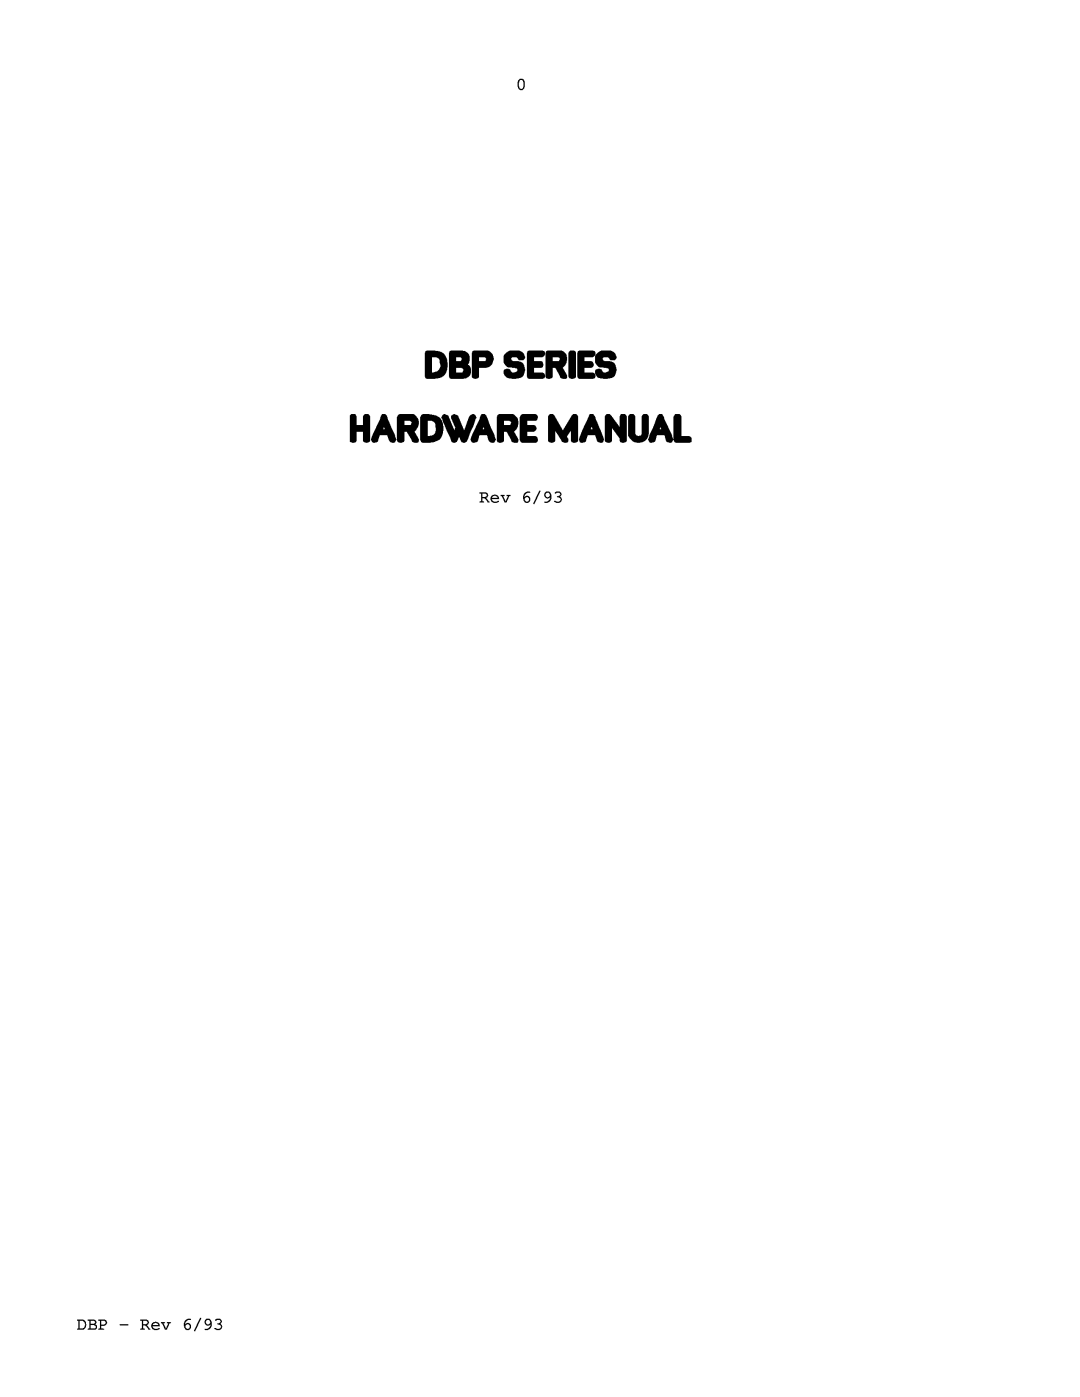 Elmo DBP SERIES manual DBP - Rev 6/93 